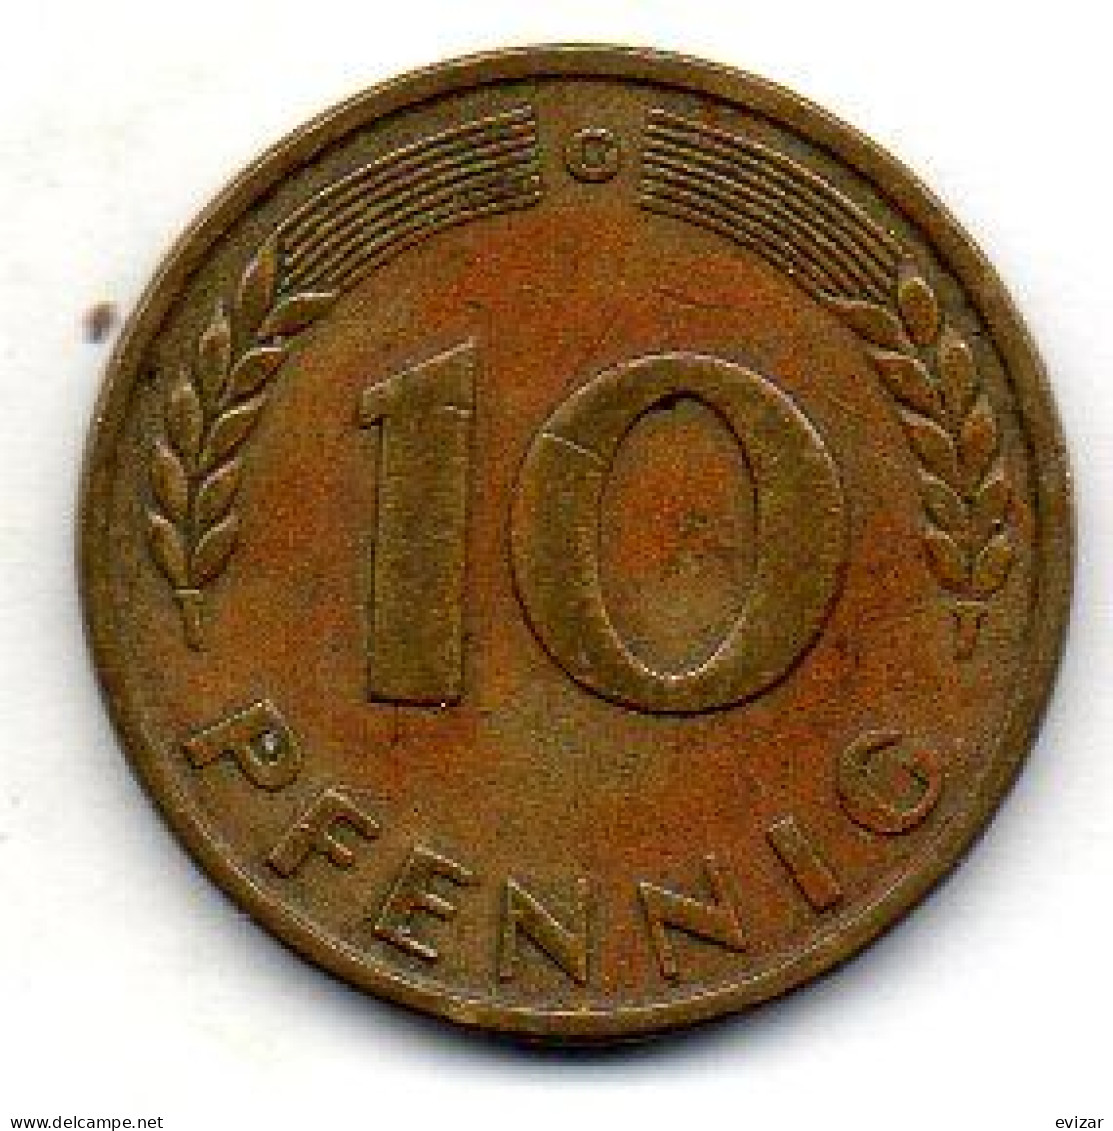 GERMANY - FEDERAL REPUBLIC, 10 Pfennig, Brass, Year 1949-G, KM # 103 - 10 Pfennig